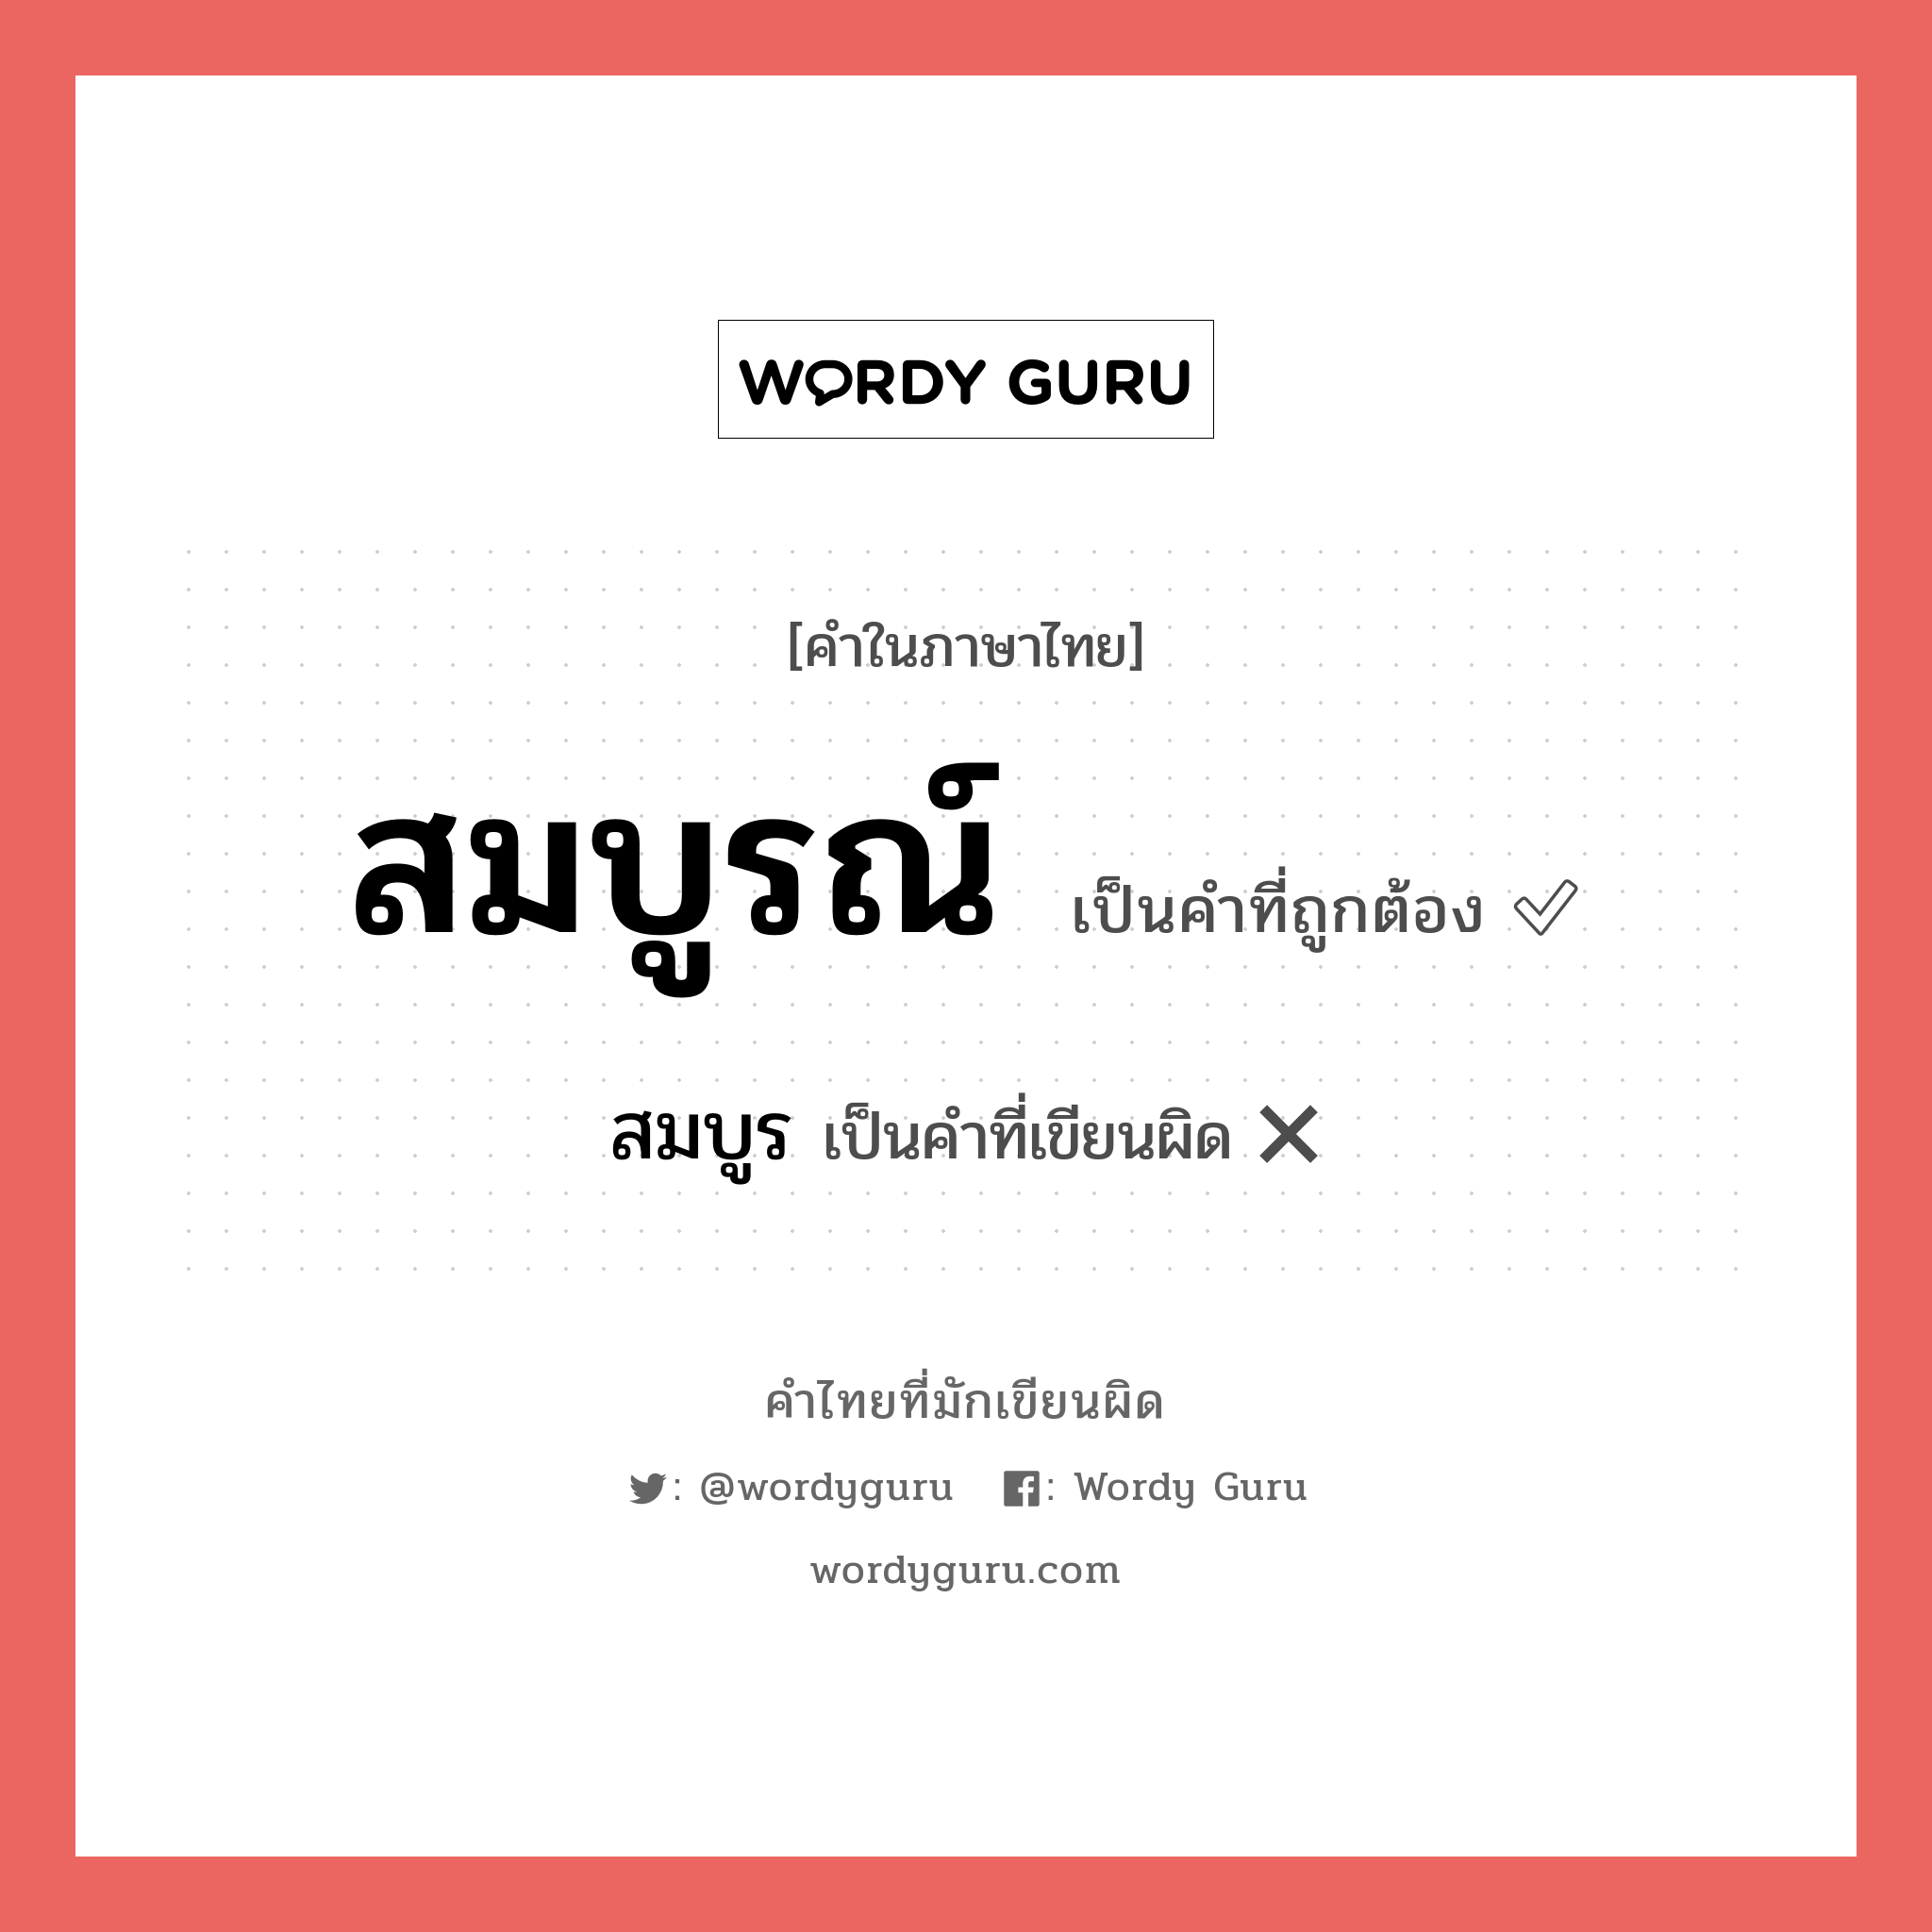 สมบูร หรือ สมบูรณ์ คำไหนเขียนถูก?, คำในภาษาไทยที่มักเขียนผิด สมบูร คำที่ผิด ❌ สมบูรณ์